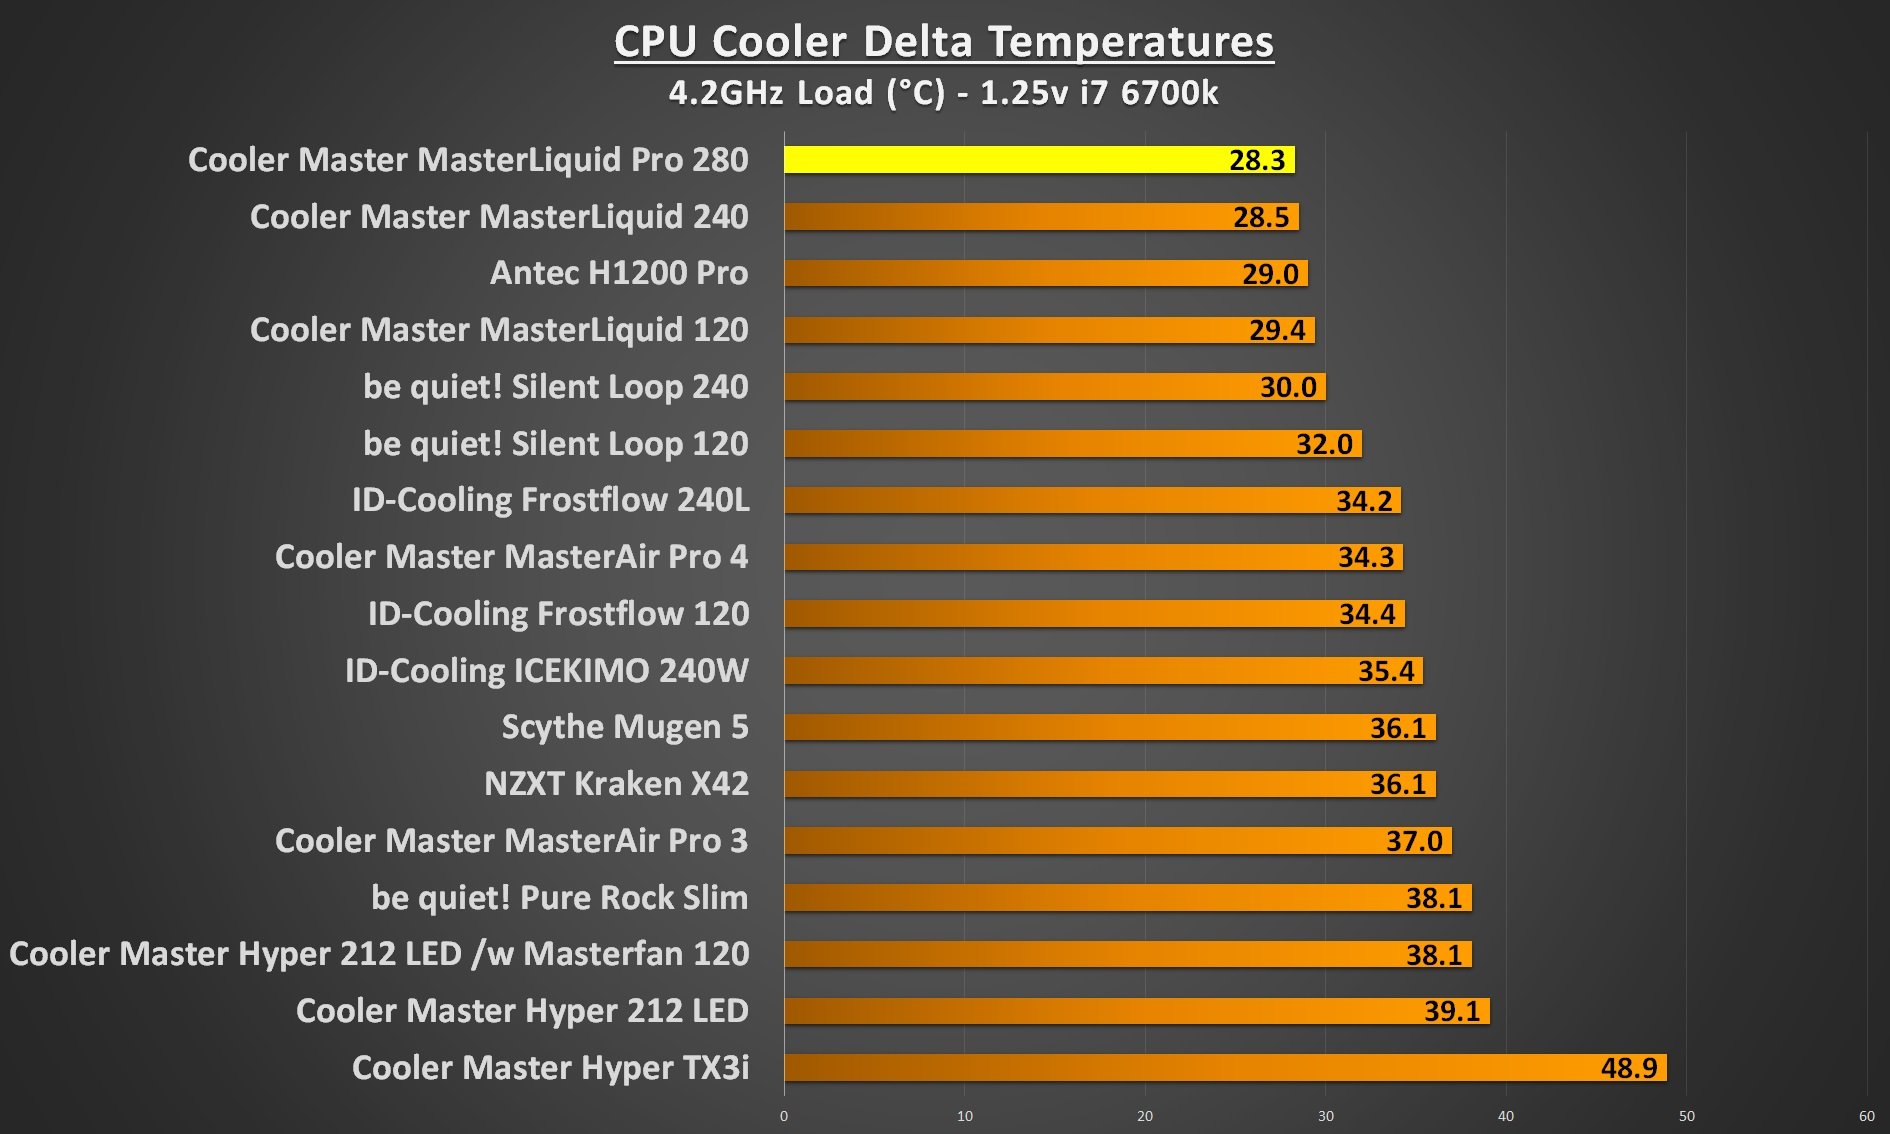 cooler master masterliquid pro 280 4.2Ghz load